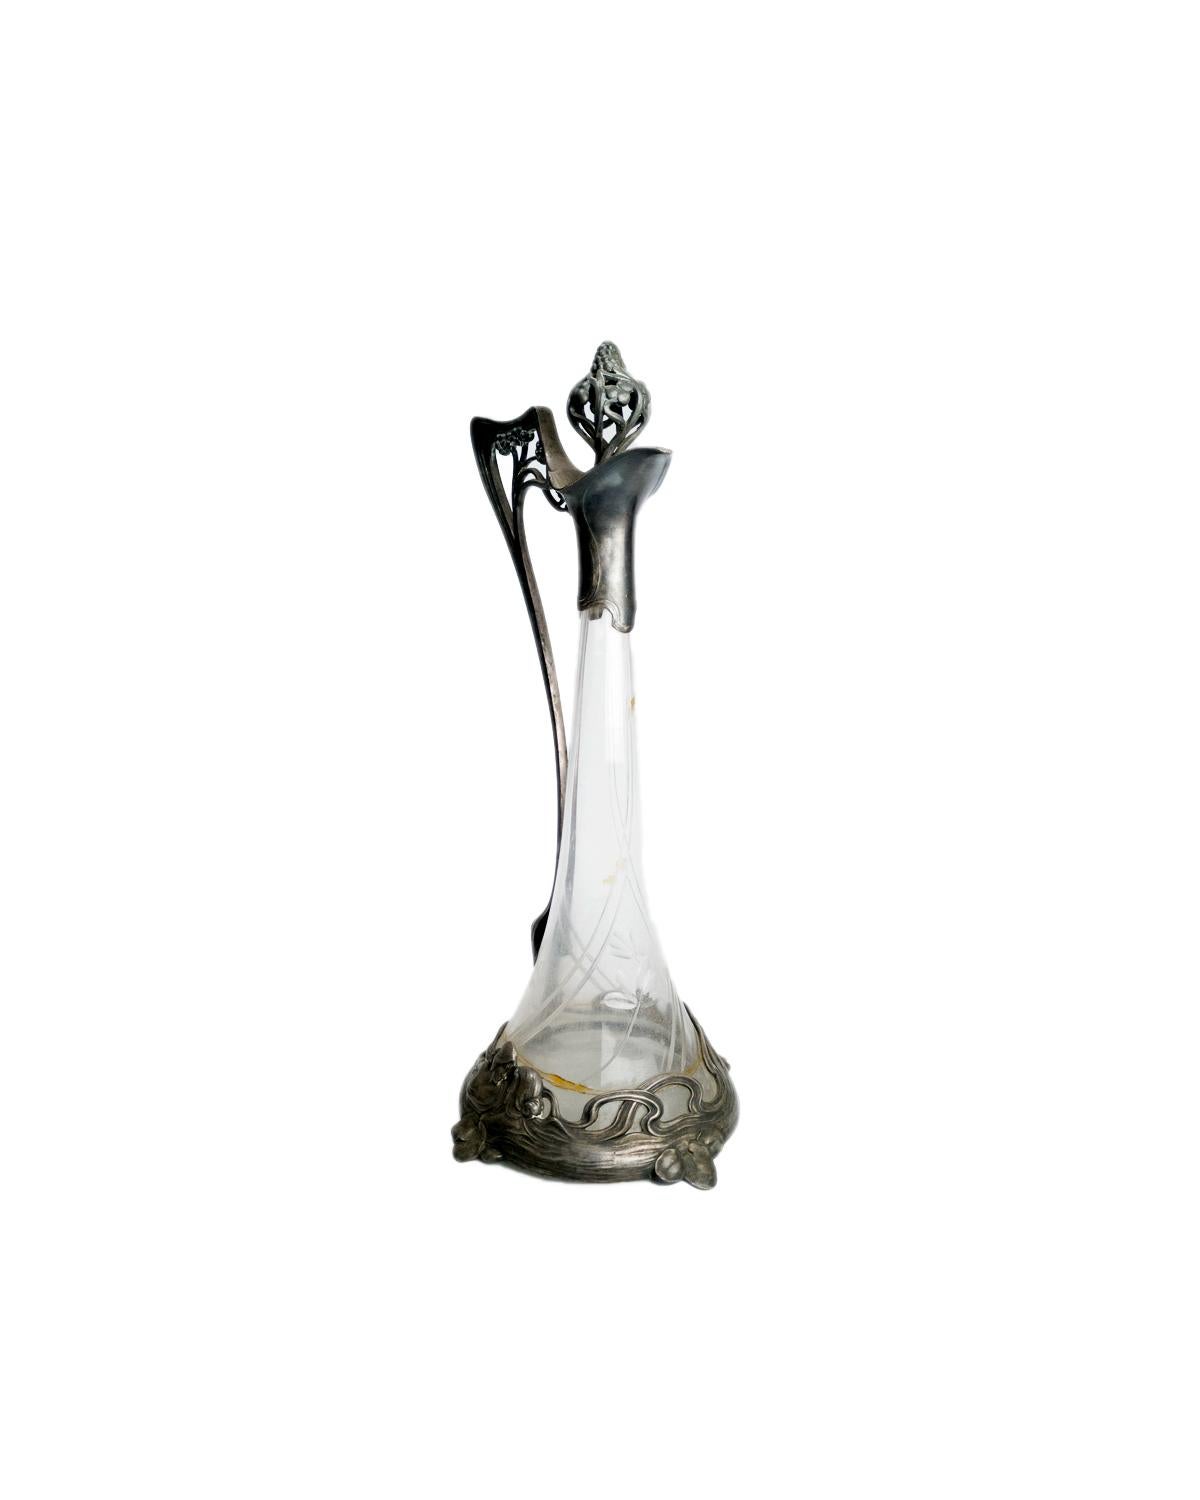 Carafe à décanter Lady Claret en verre de style Jugendstil, avec bouchon raffiné, conçue par WMF, en verre et plaquée argent.
Un excellent exemple de Design/One avec une décoration de vigne dans le métal. 
